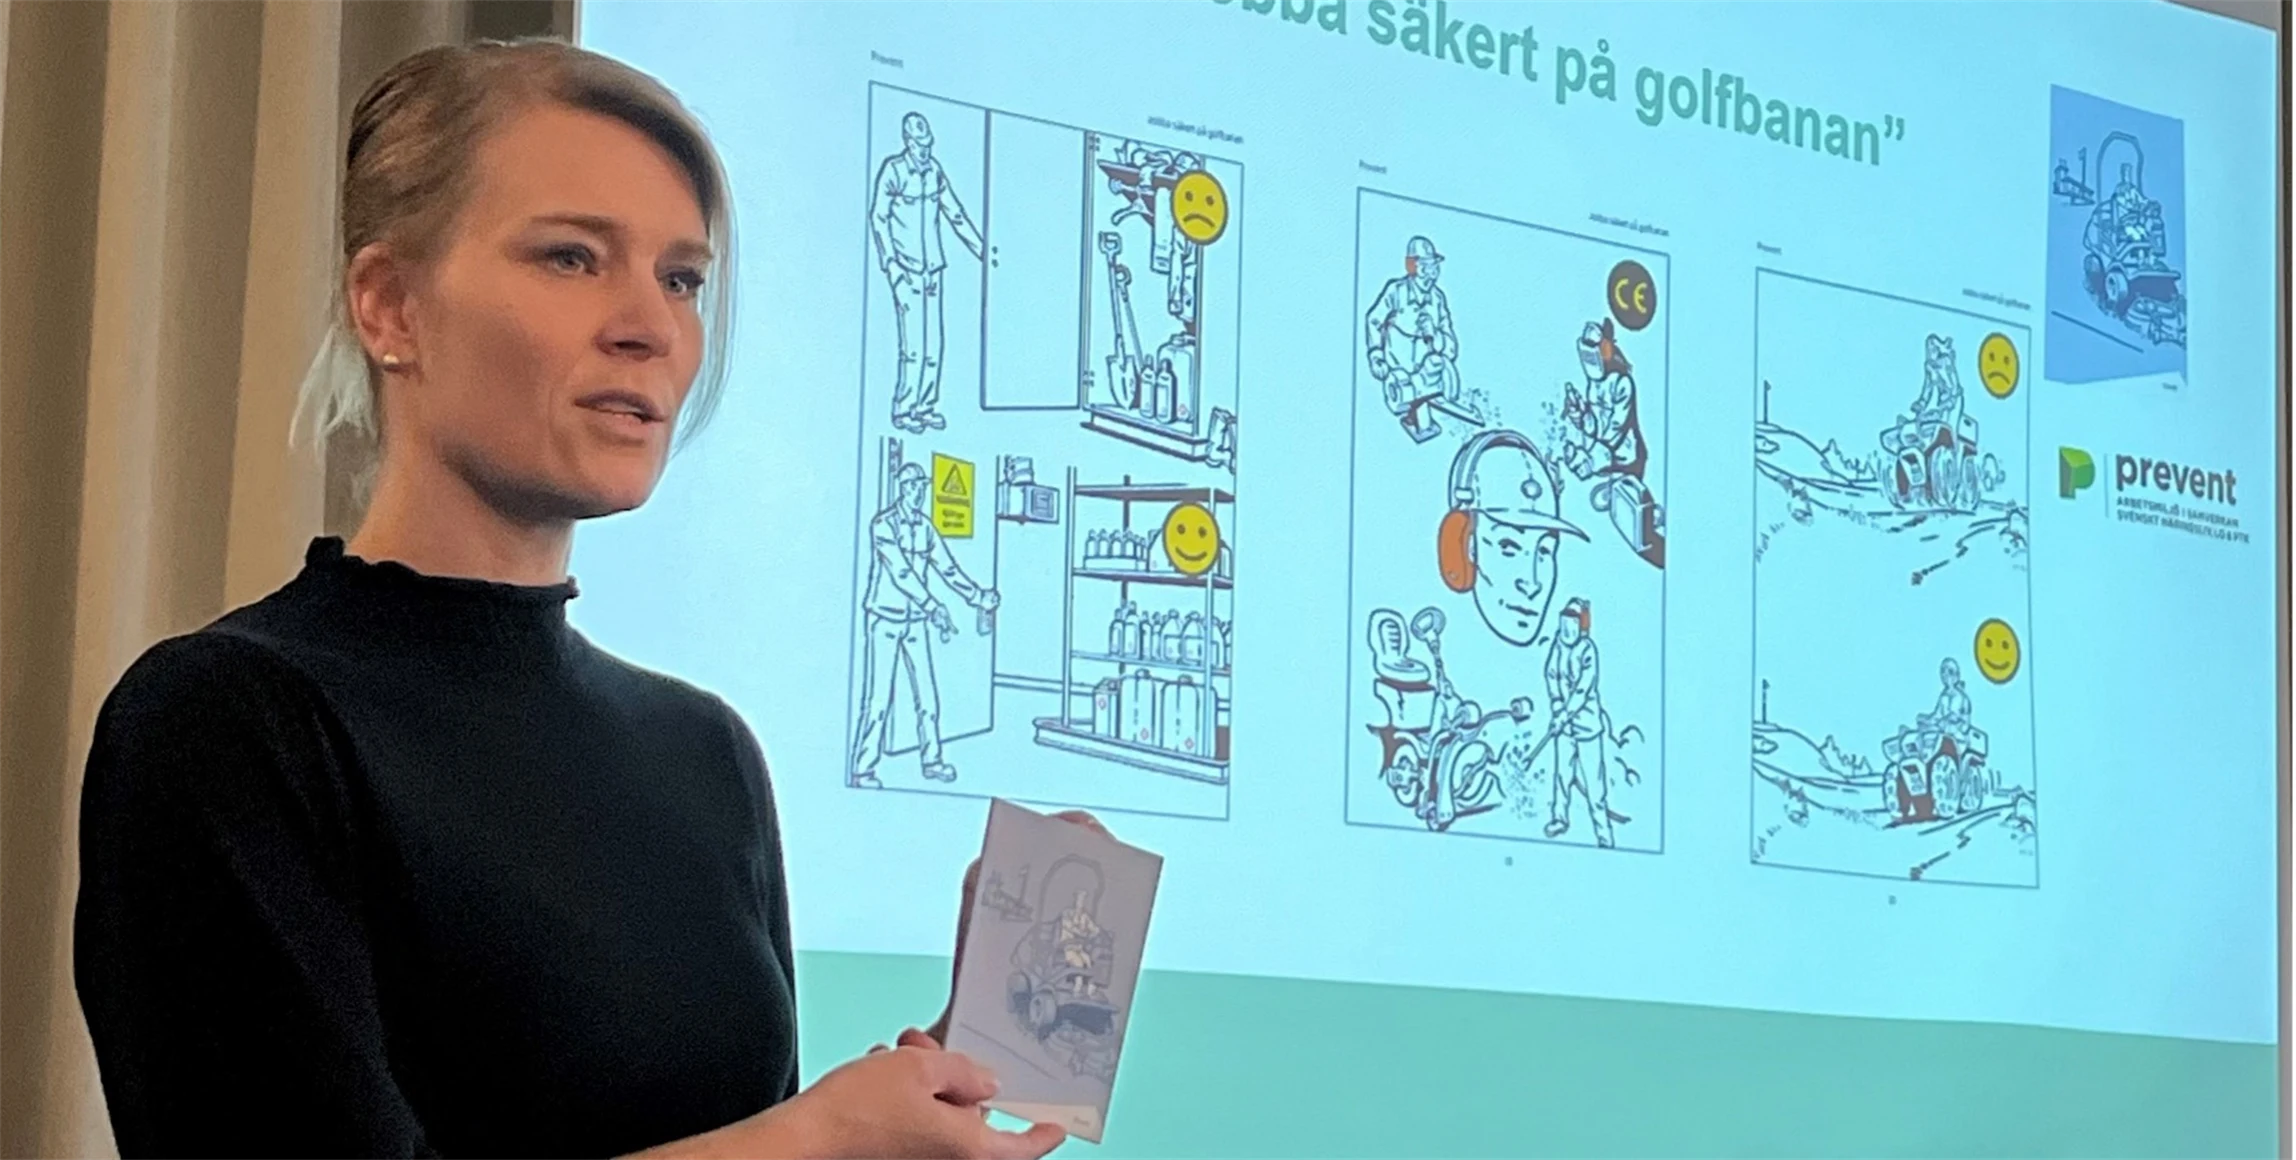 Bild på Camilla Backlund, Gröna arbetsgivare, som berättar om bilderboken ”Jobba säkert på golfbanan”.